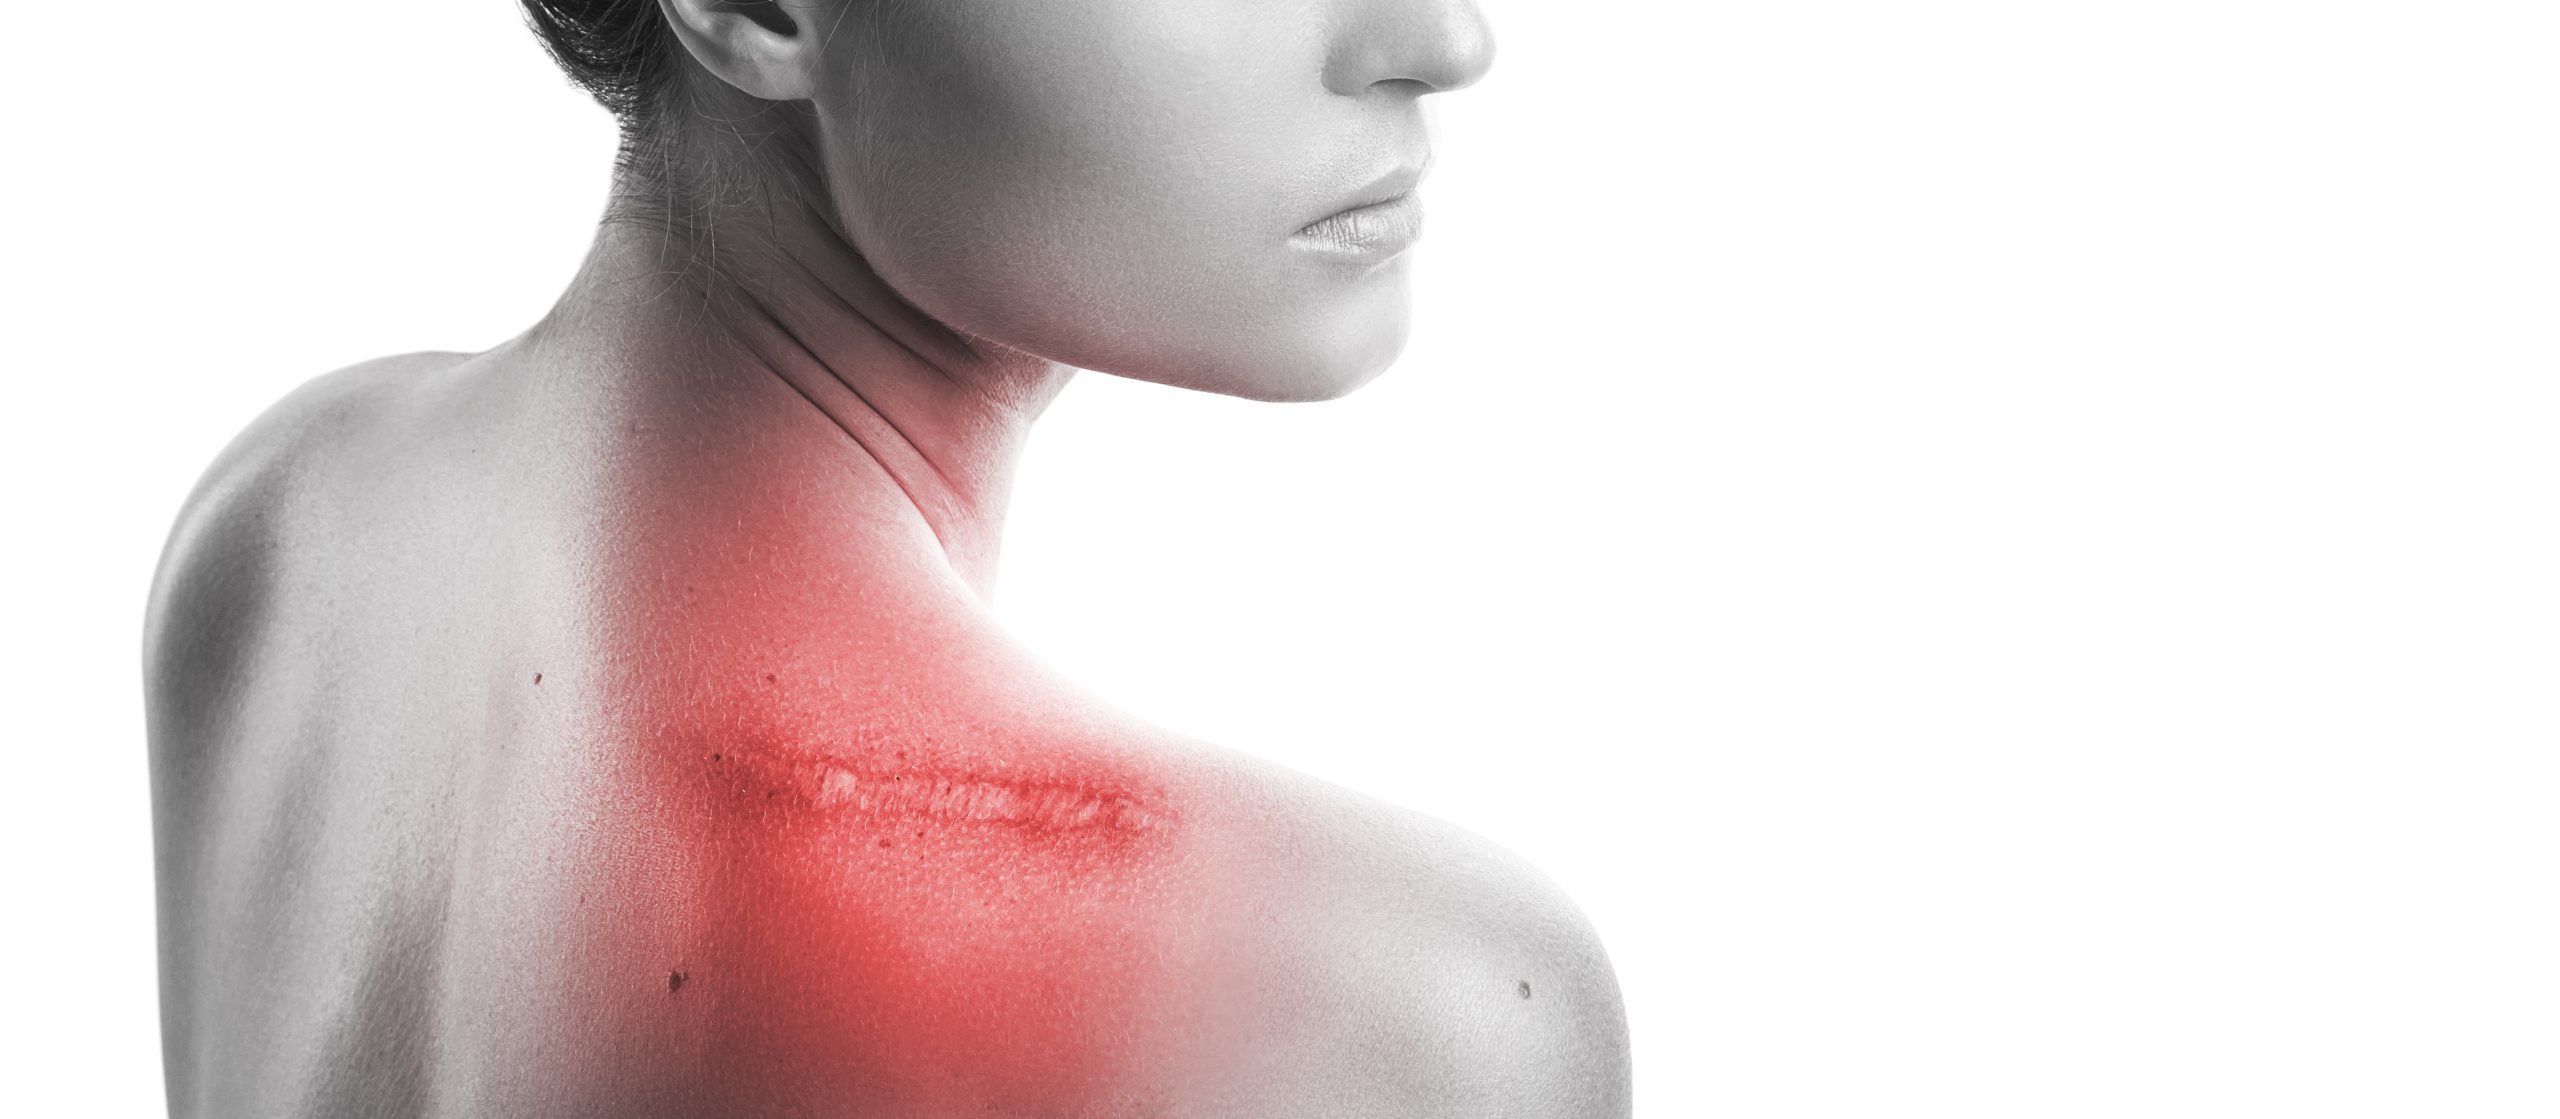 "Les Contractures Post-Traumatiques : Une Hypertonicité Musculaire Énigmatique dans la Fibromyalgie